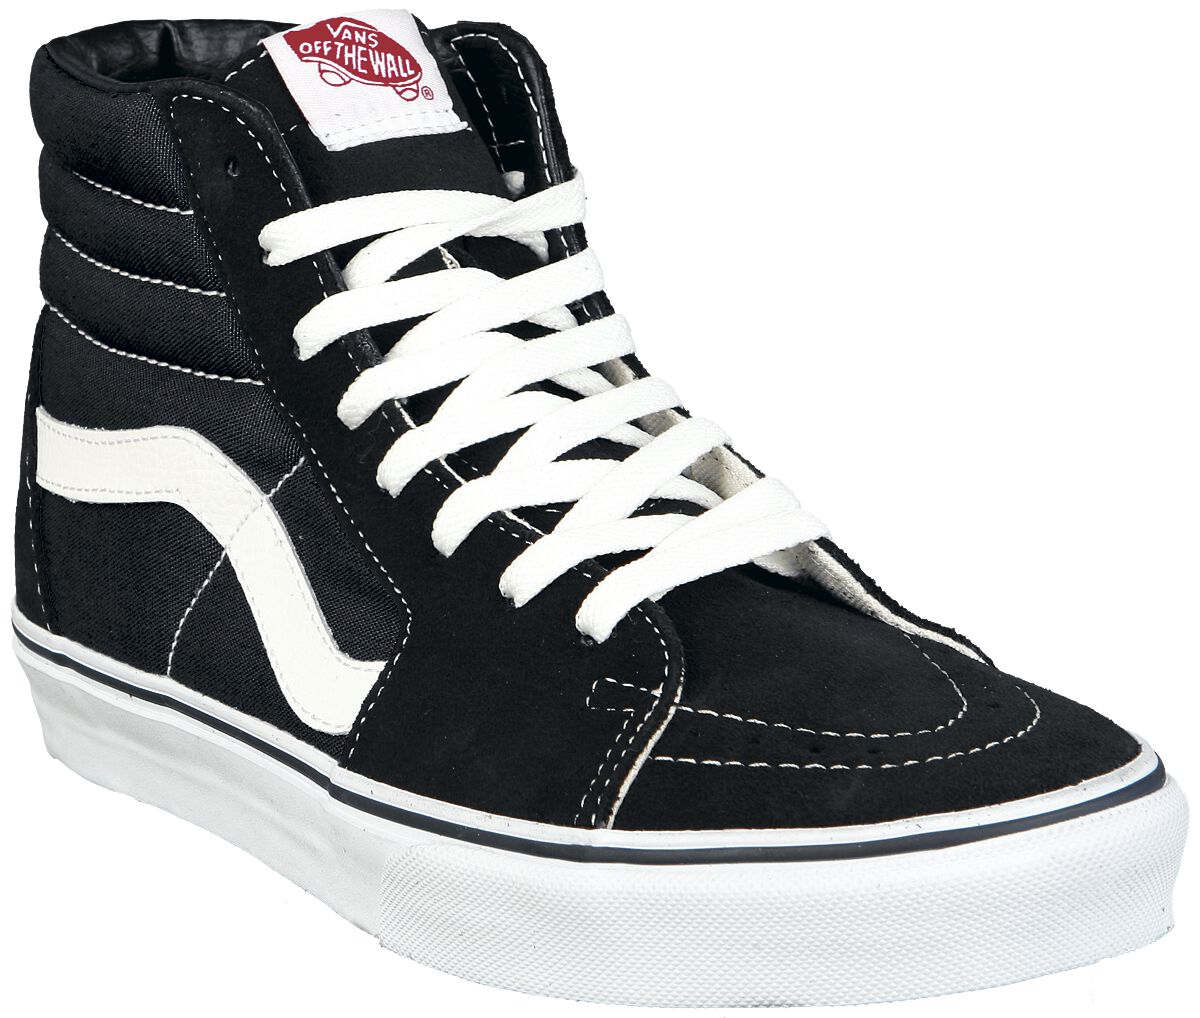 Vans Sneaker high - SK8-Hi - EU37 bis EU47 - Größe EU39 - schwarz/weiß